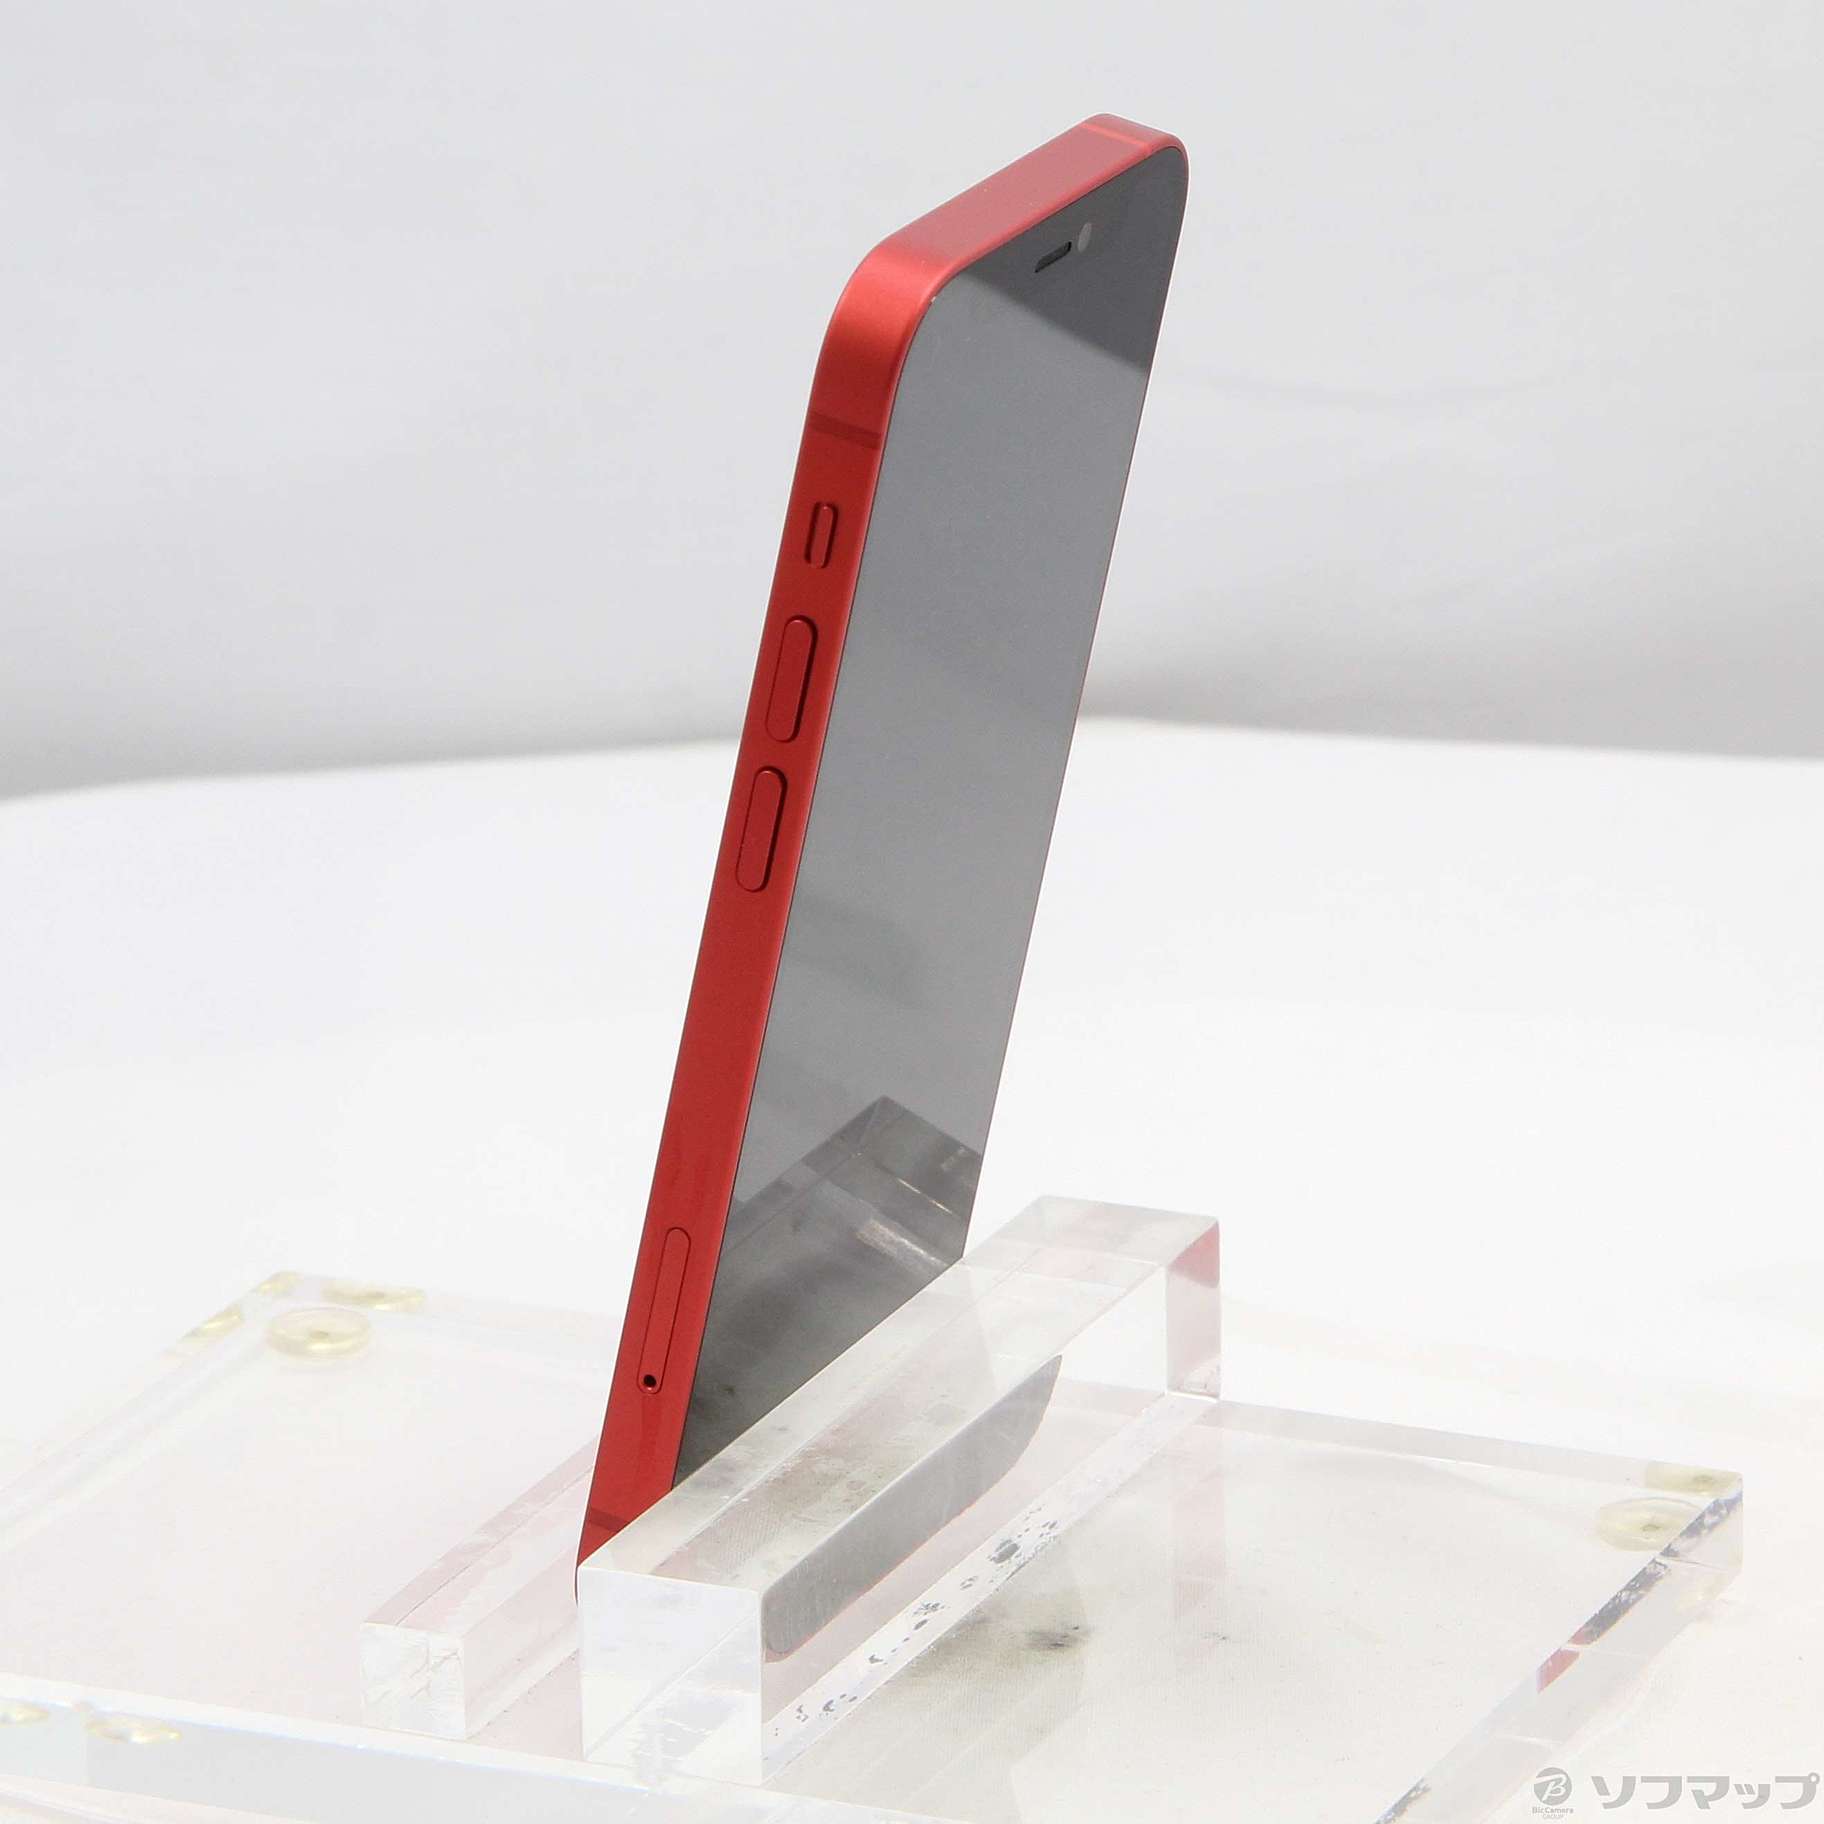 【極美品】92% iPhone12 mini 64GB MGAE3J/A RED